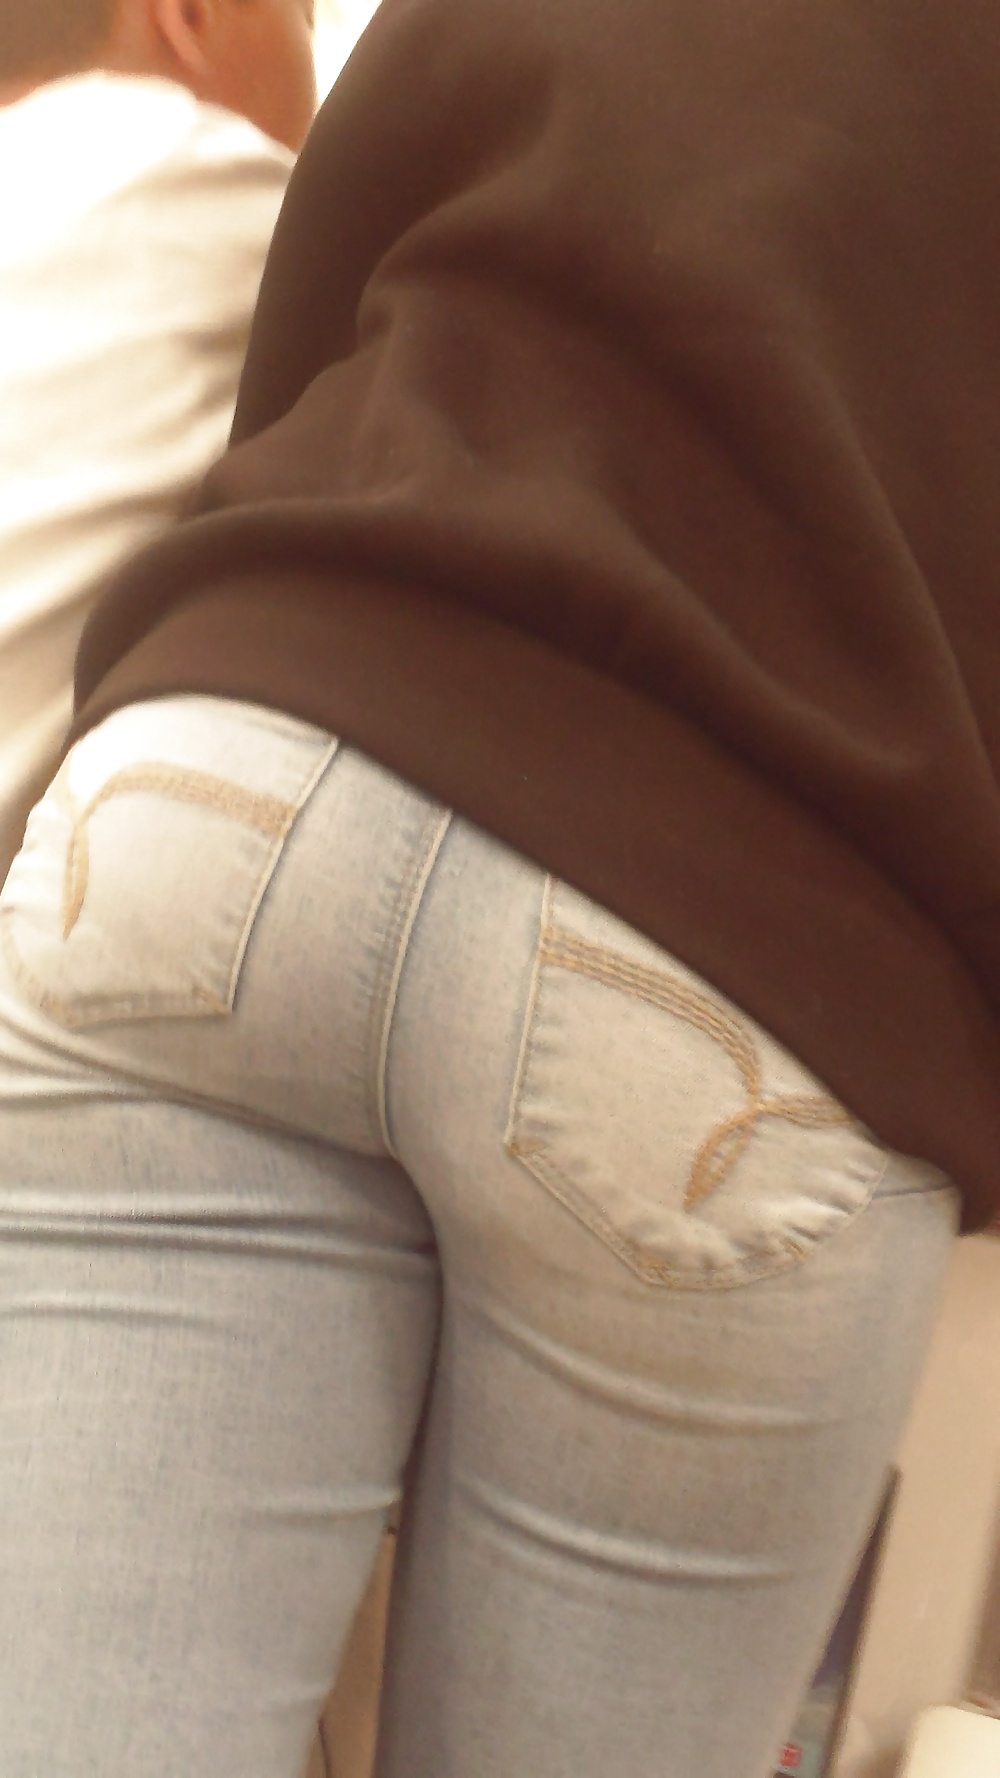 Popular teen girls ass & butt in jeans Part 6 #32009650